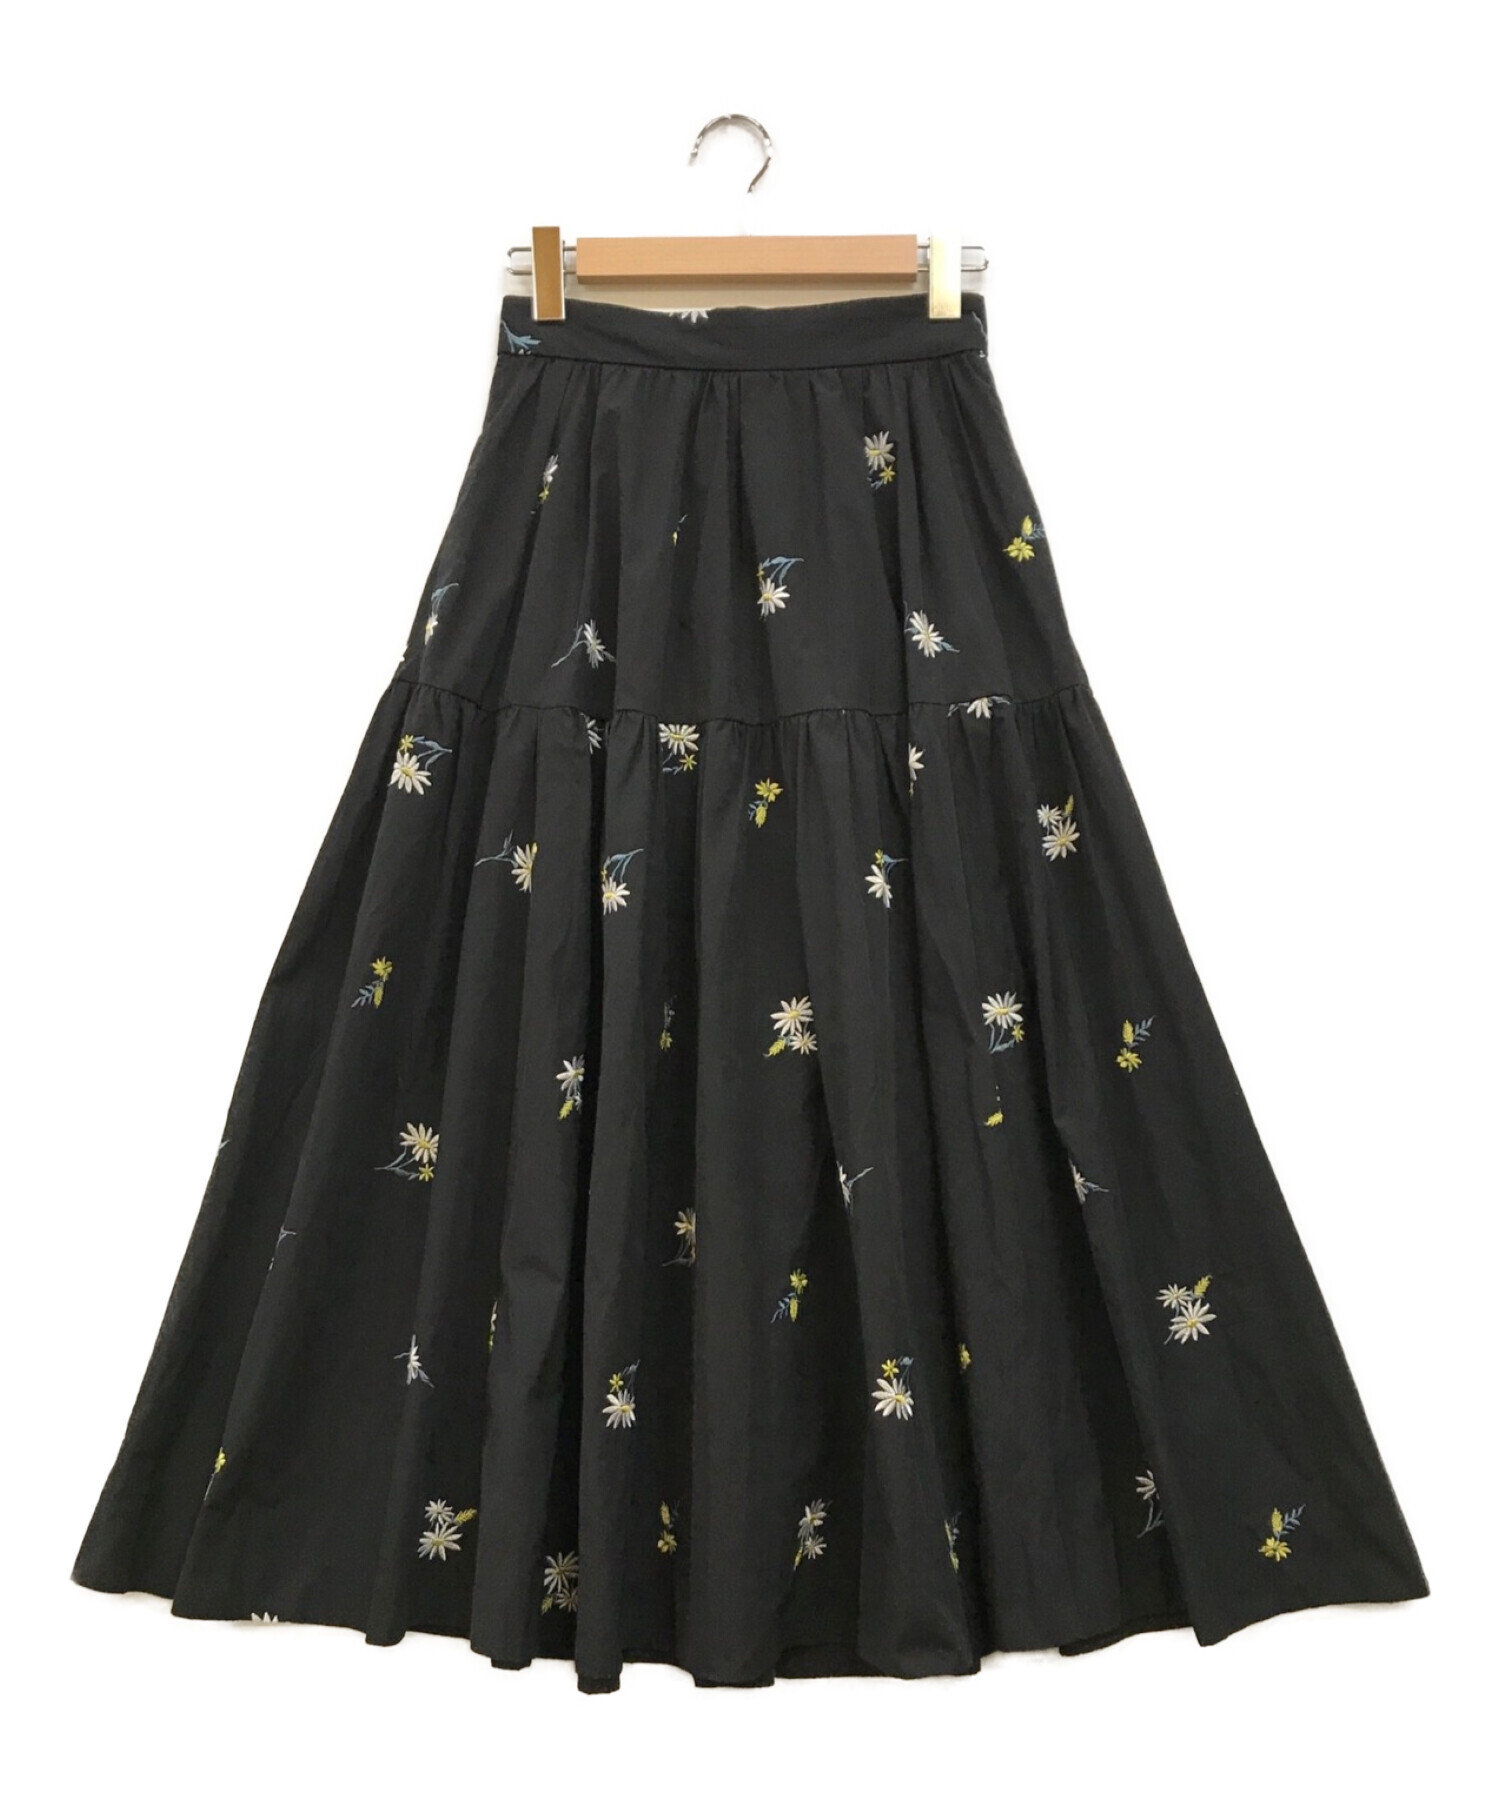 Apuweiser-riche マーガレット刺繍スカート